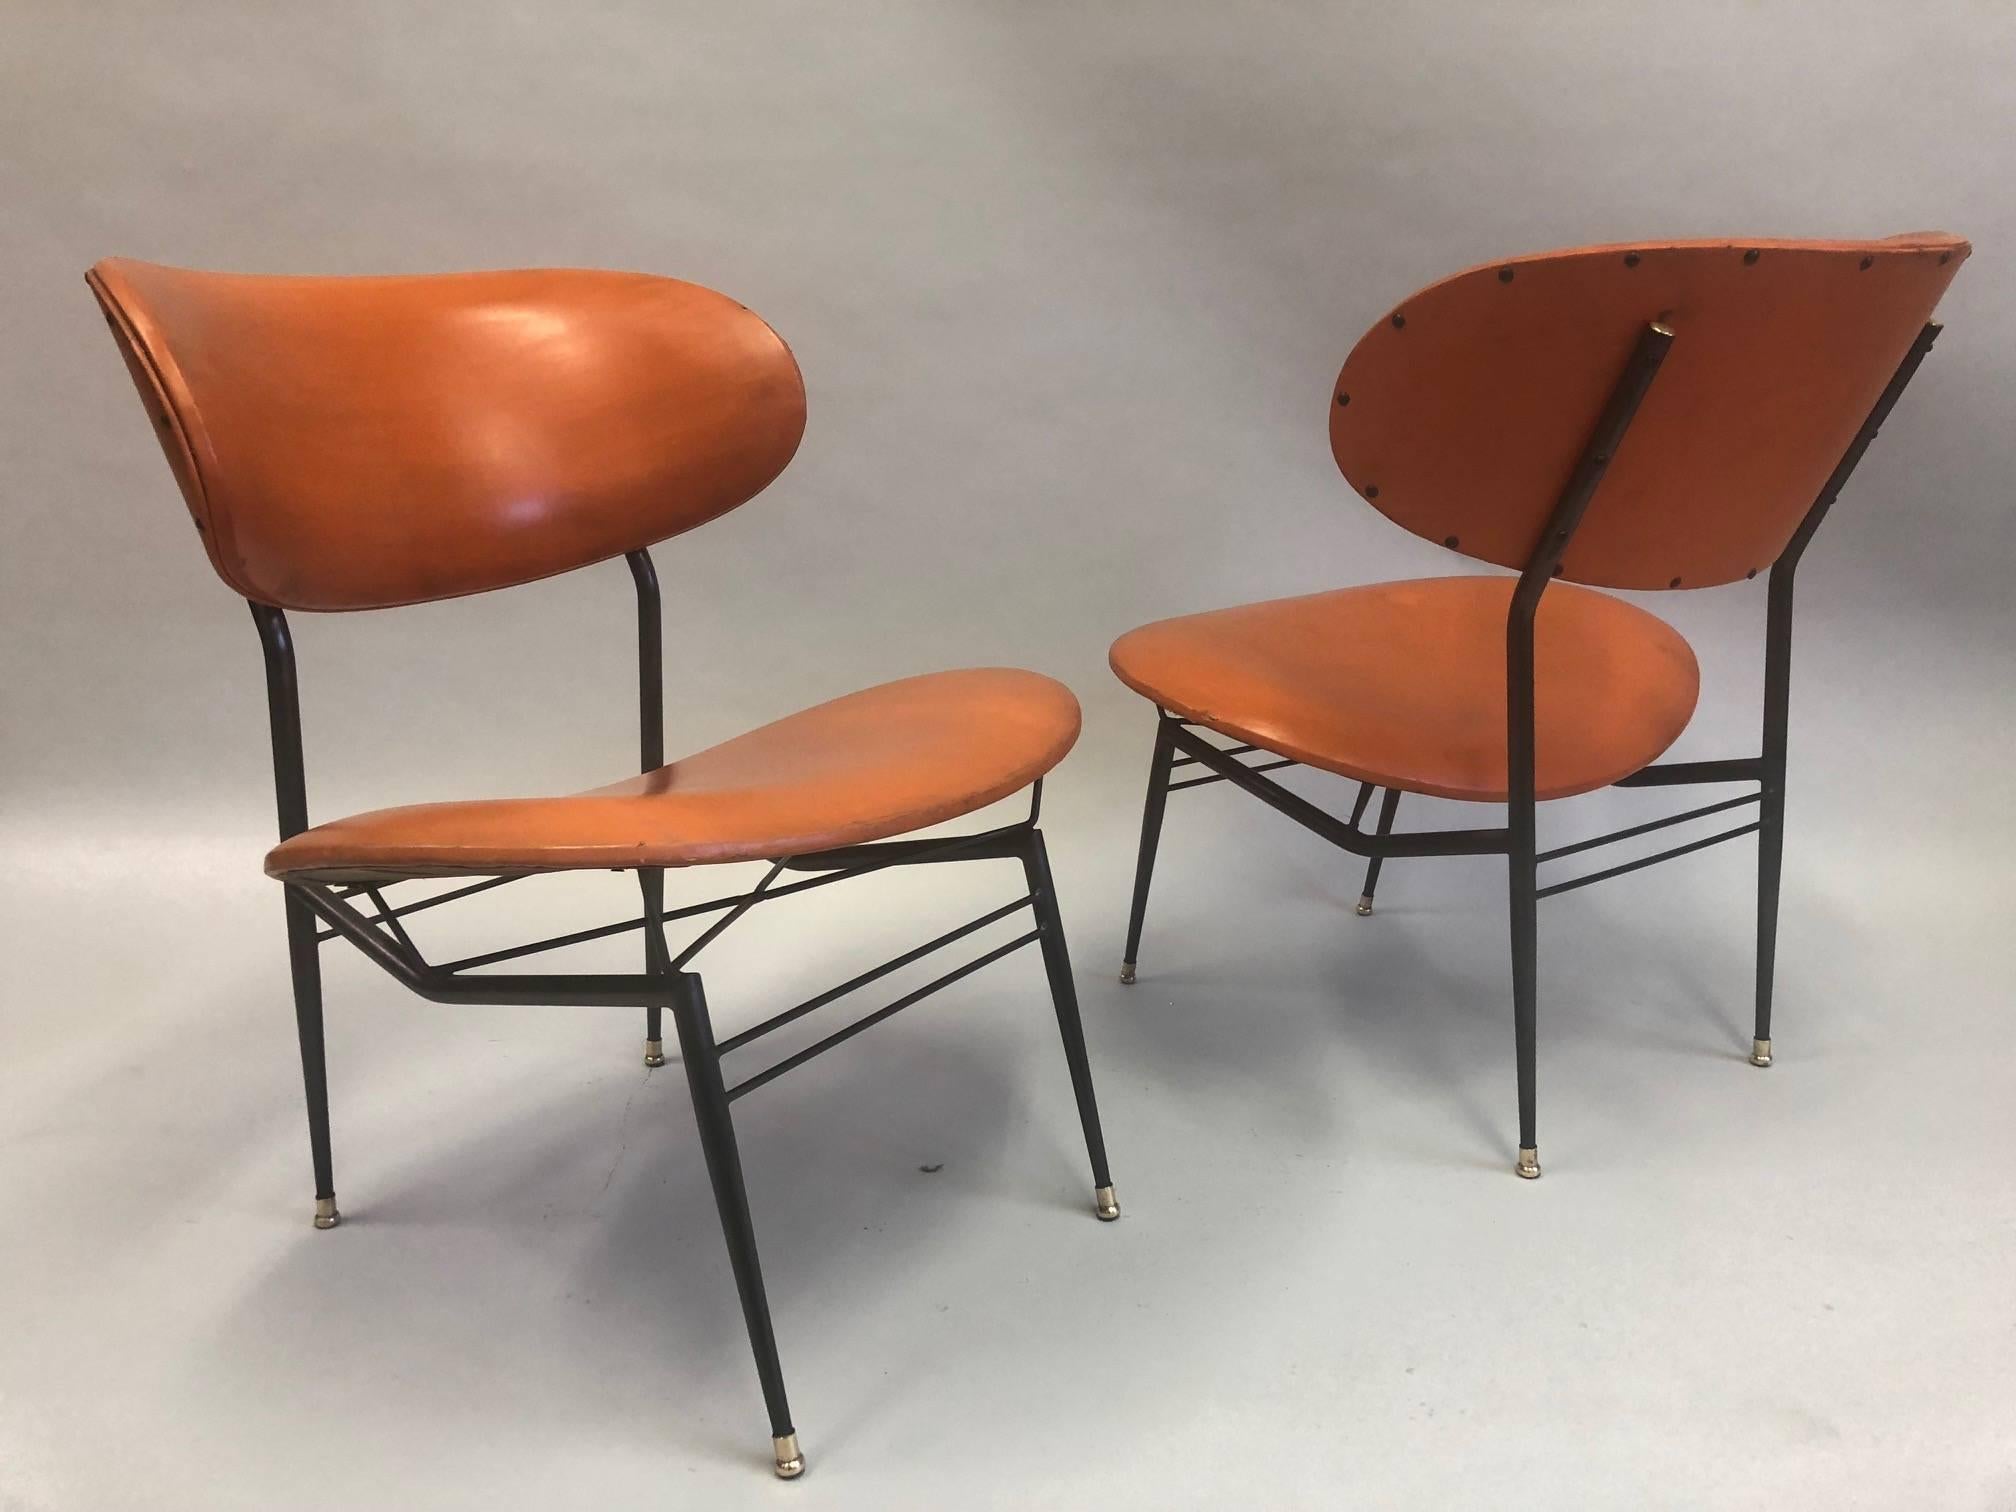 Zwei Paare von wichtigen italienischen Mid-Century Modern Lounge Stühle / Sessel / Slipper Stühle von Gastone Rinaldi. Diese atemberaubenden Stücke haben eine seltene, architektonische Präsenz und bestehen aus einem emaillierten Stahlrahmen, der mit